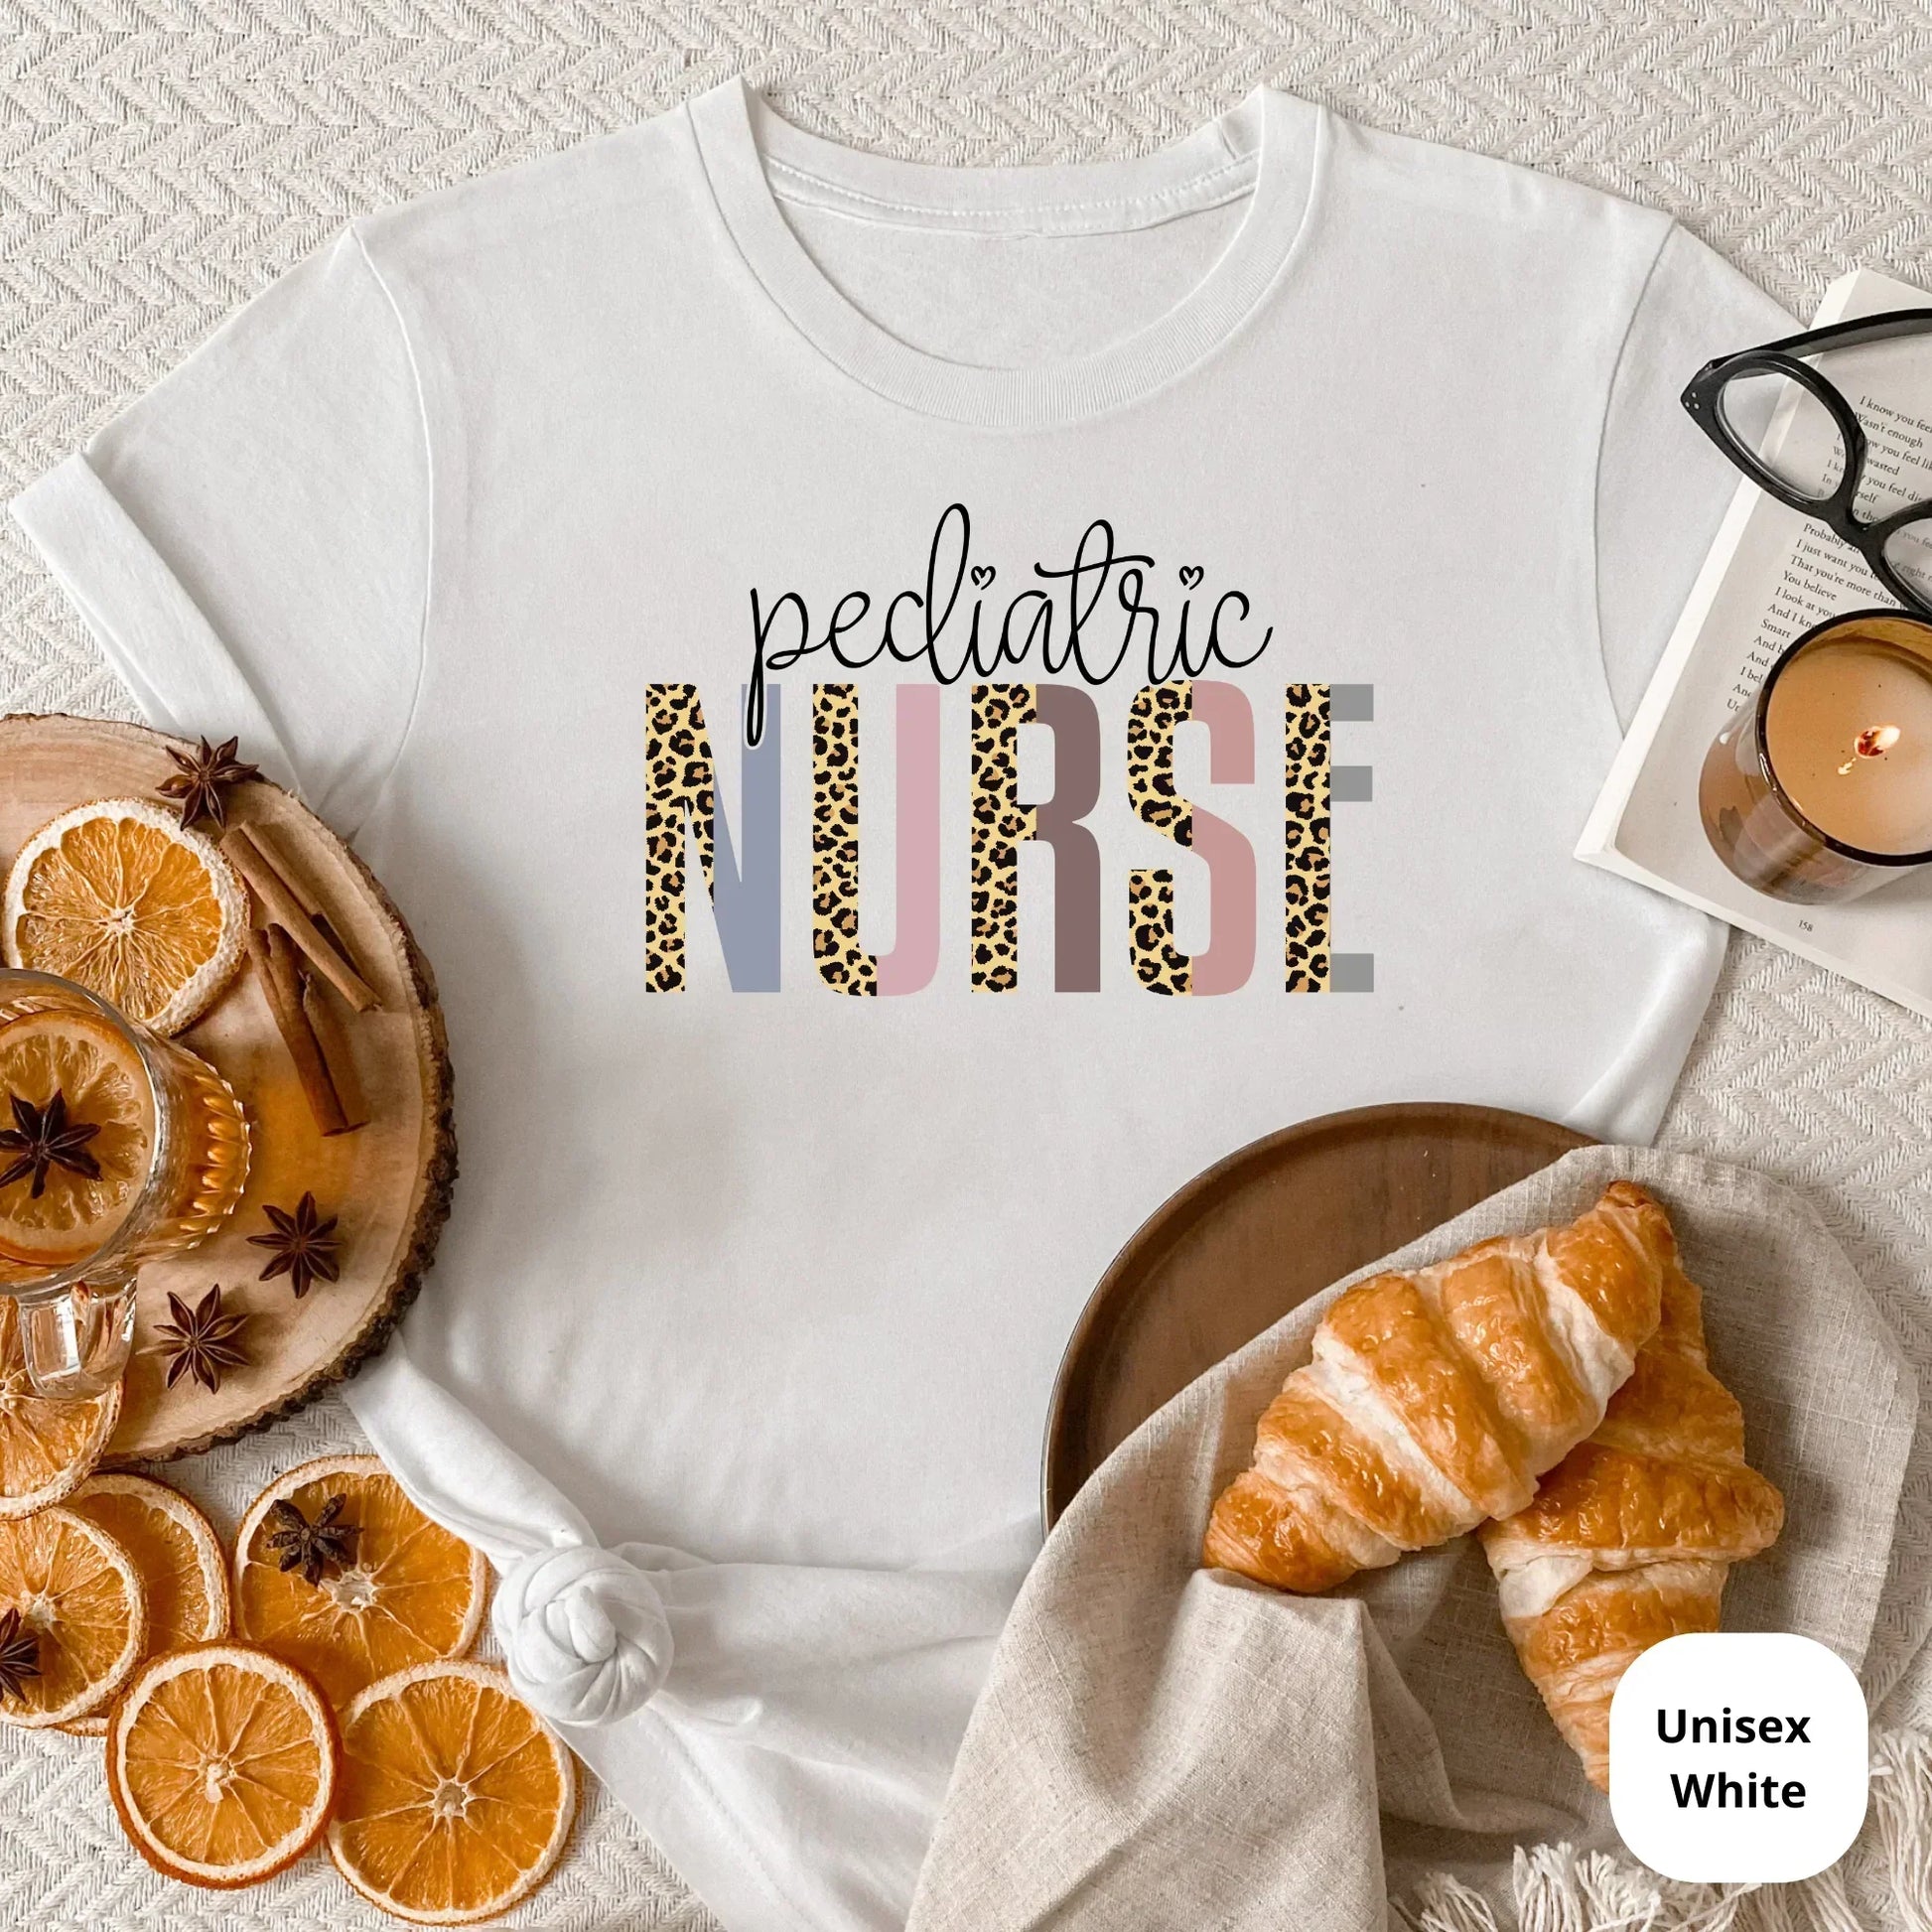 Pediatric Nurse, Peds Nurse Life, The future is female, Nurse practitioner, Nursing Student, Nurse appreciation, Gift for Nurse HMDesignStudioUS